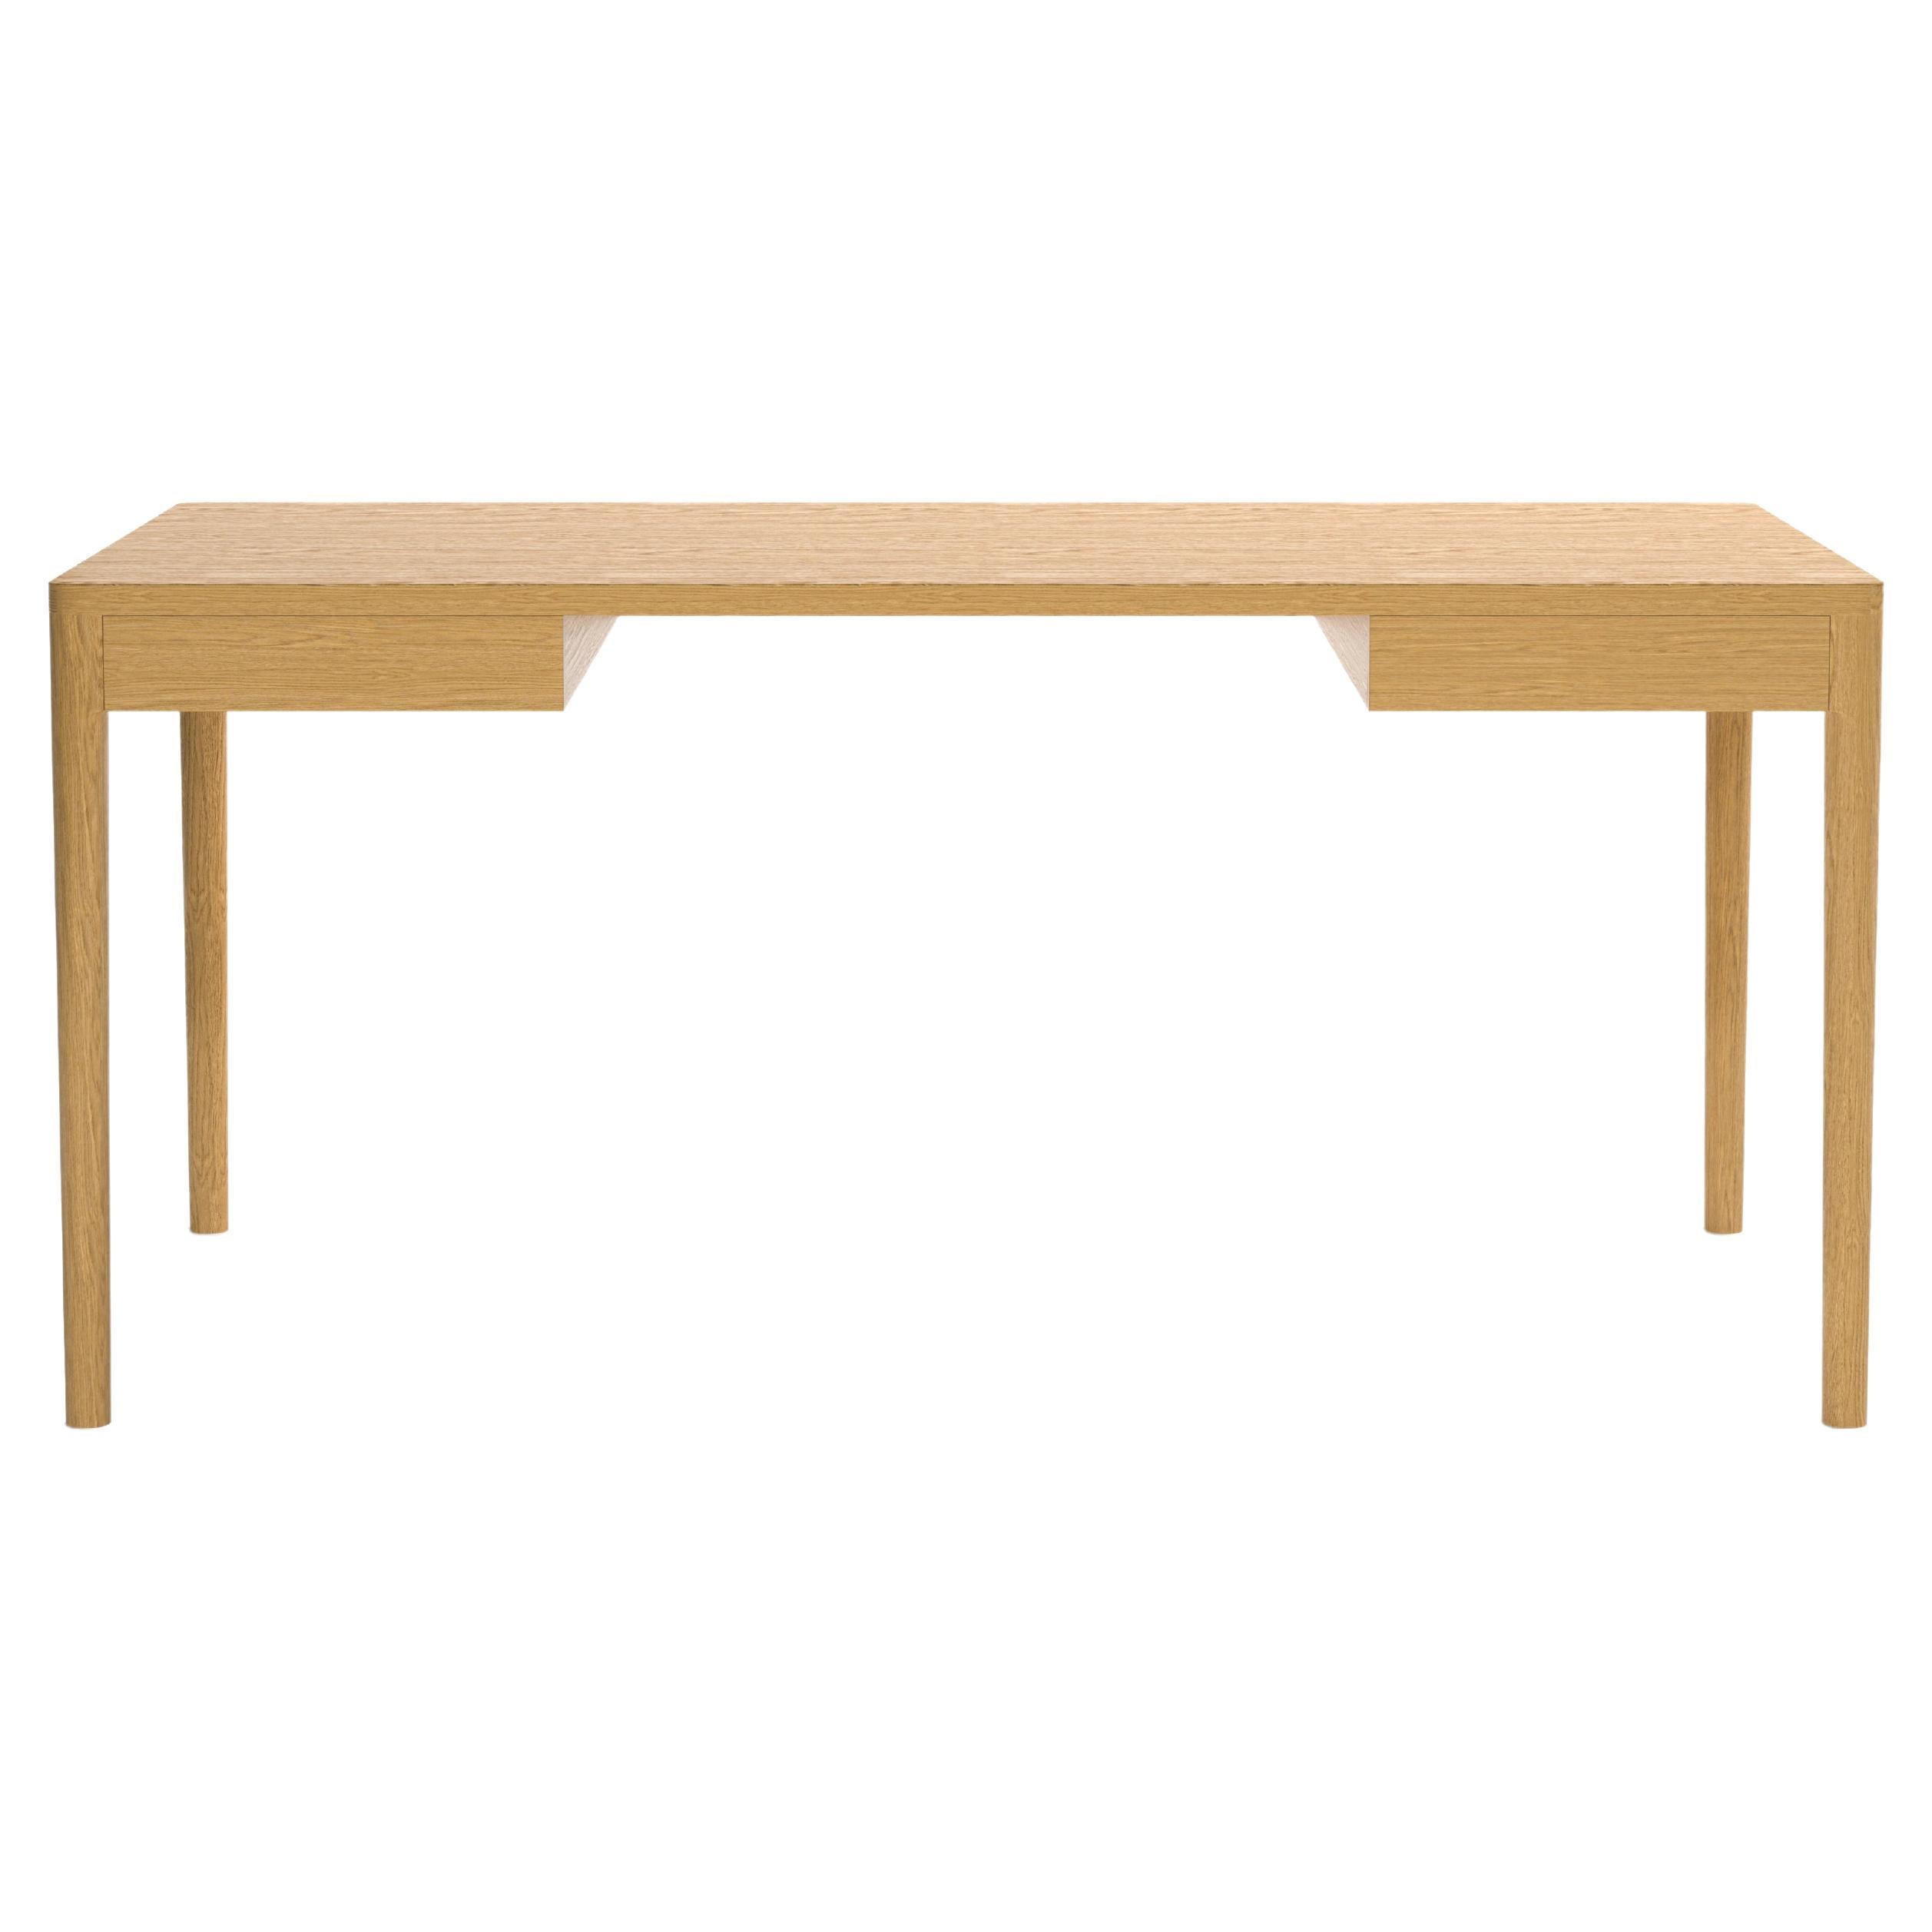 Minimalist Modern Desk in Oak 160x80 cm